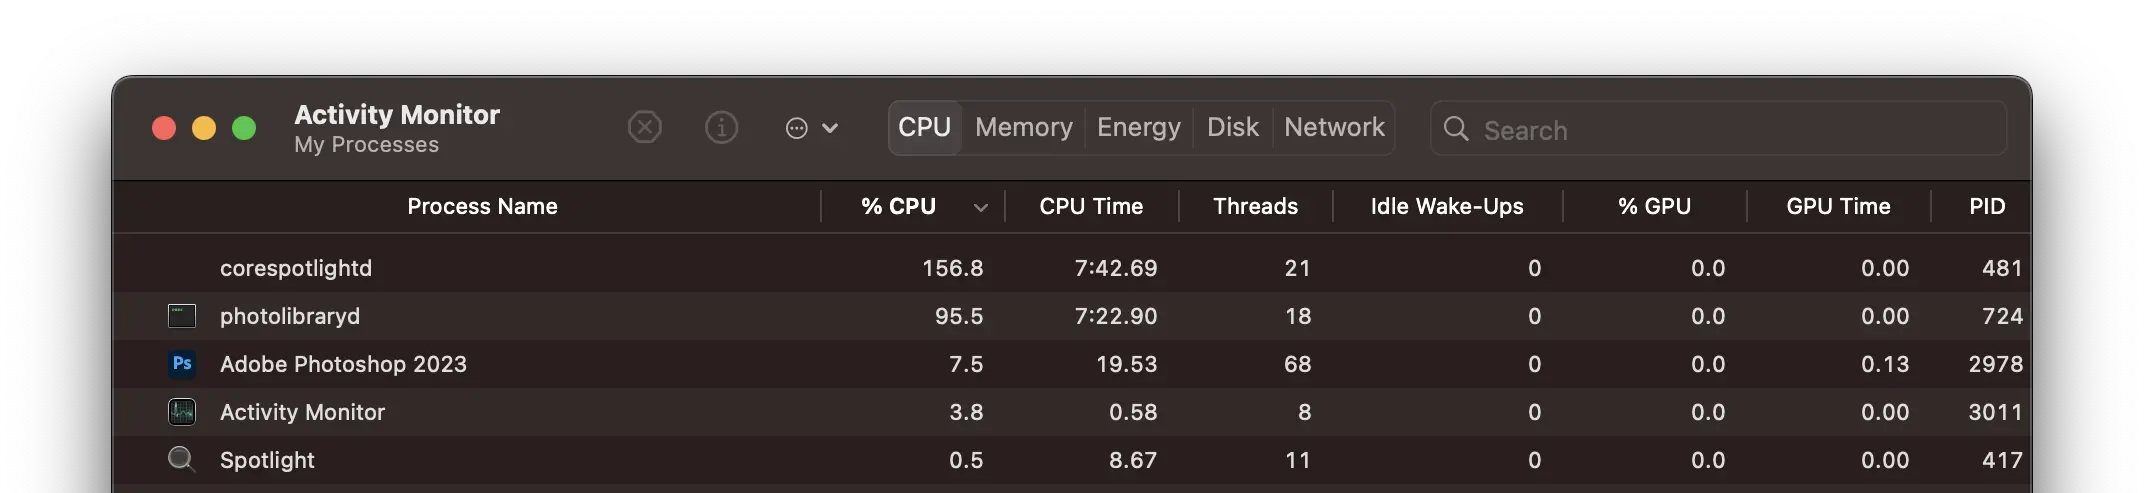 Tại sao corespotlightd sử dụng tài nguyên cao CPU